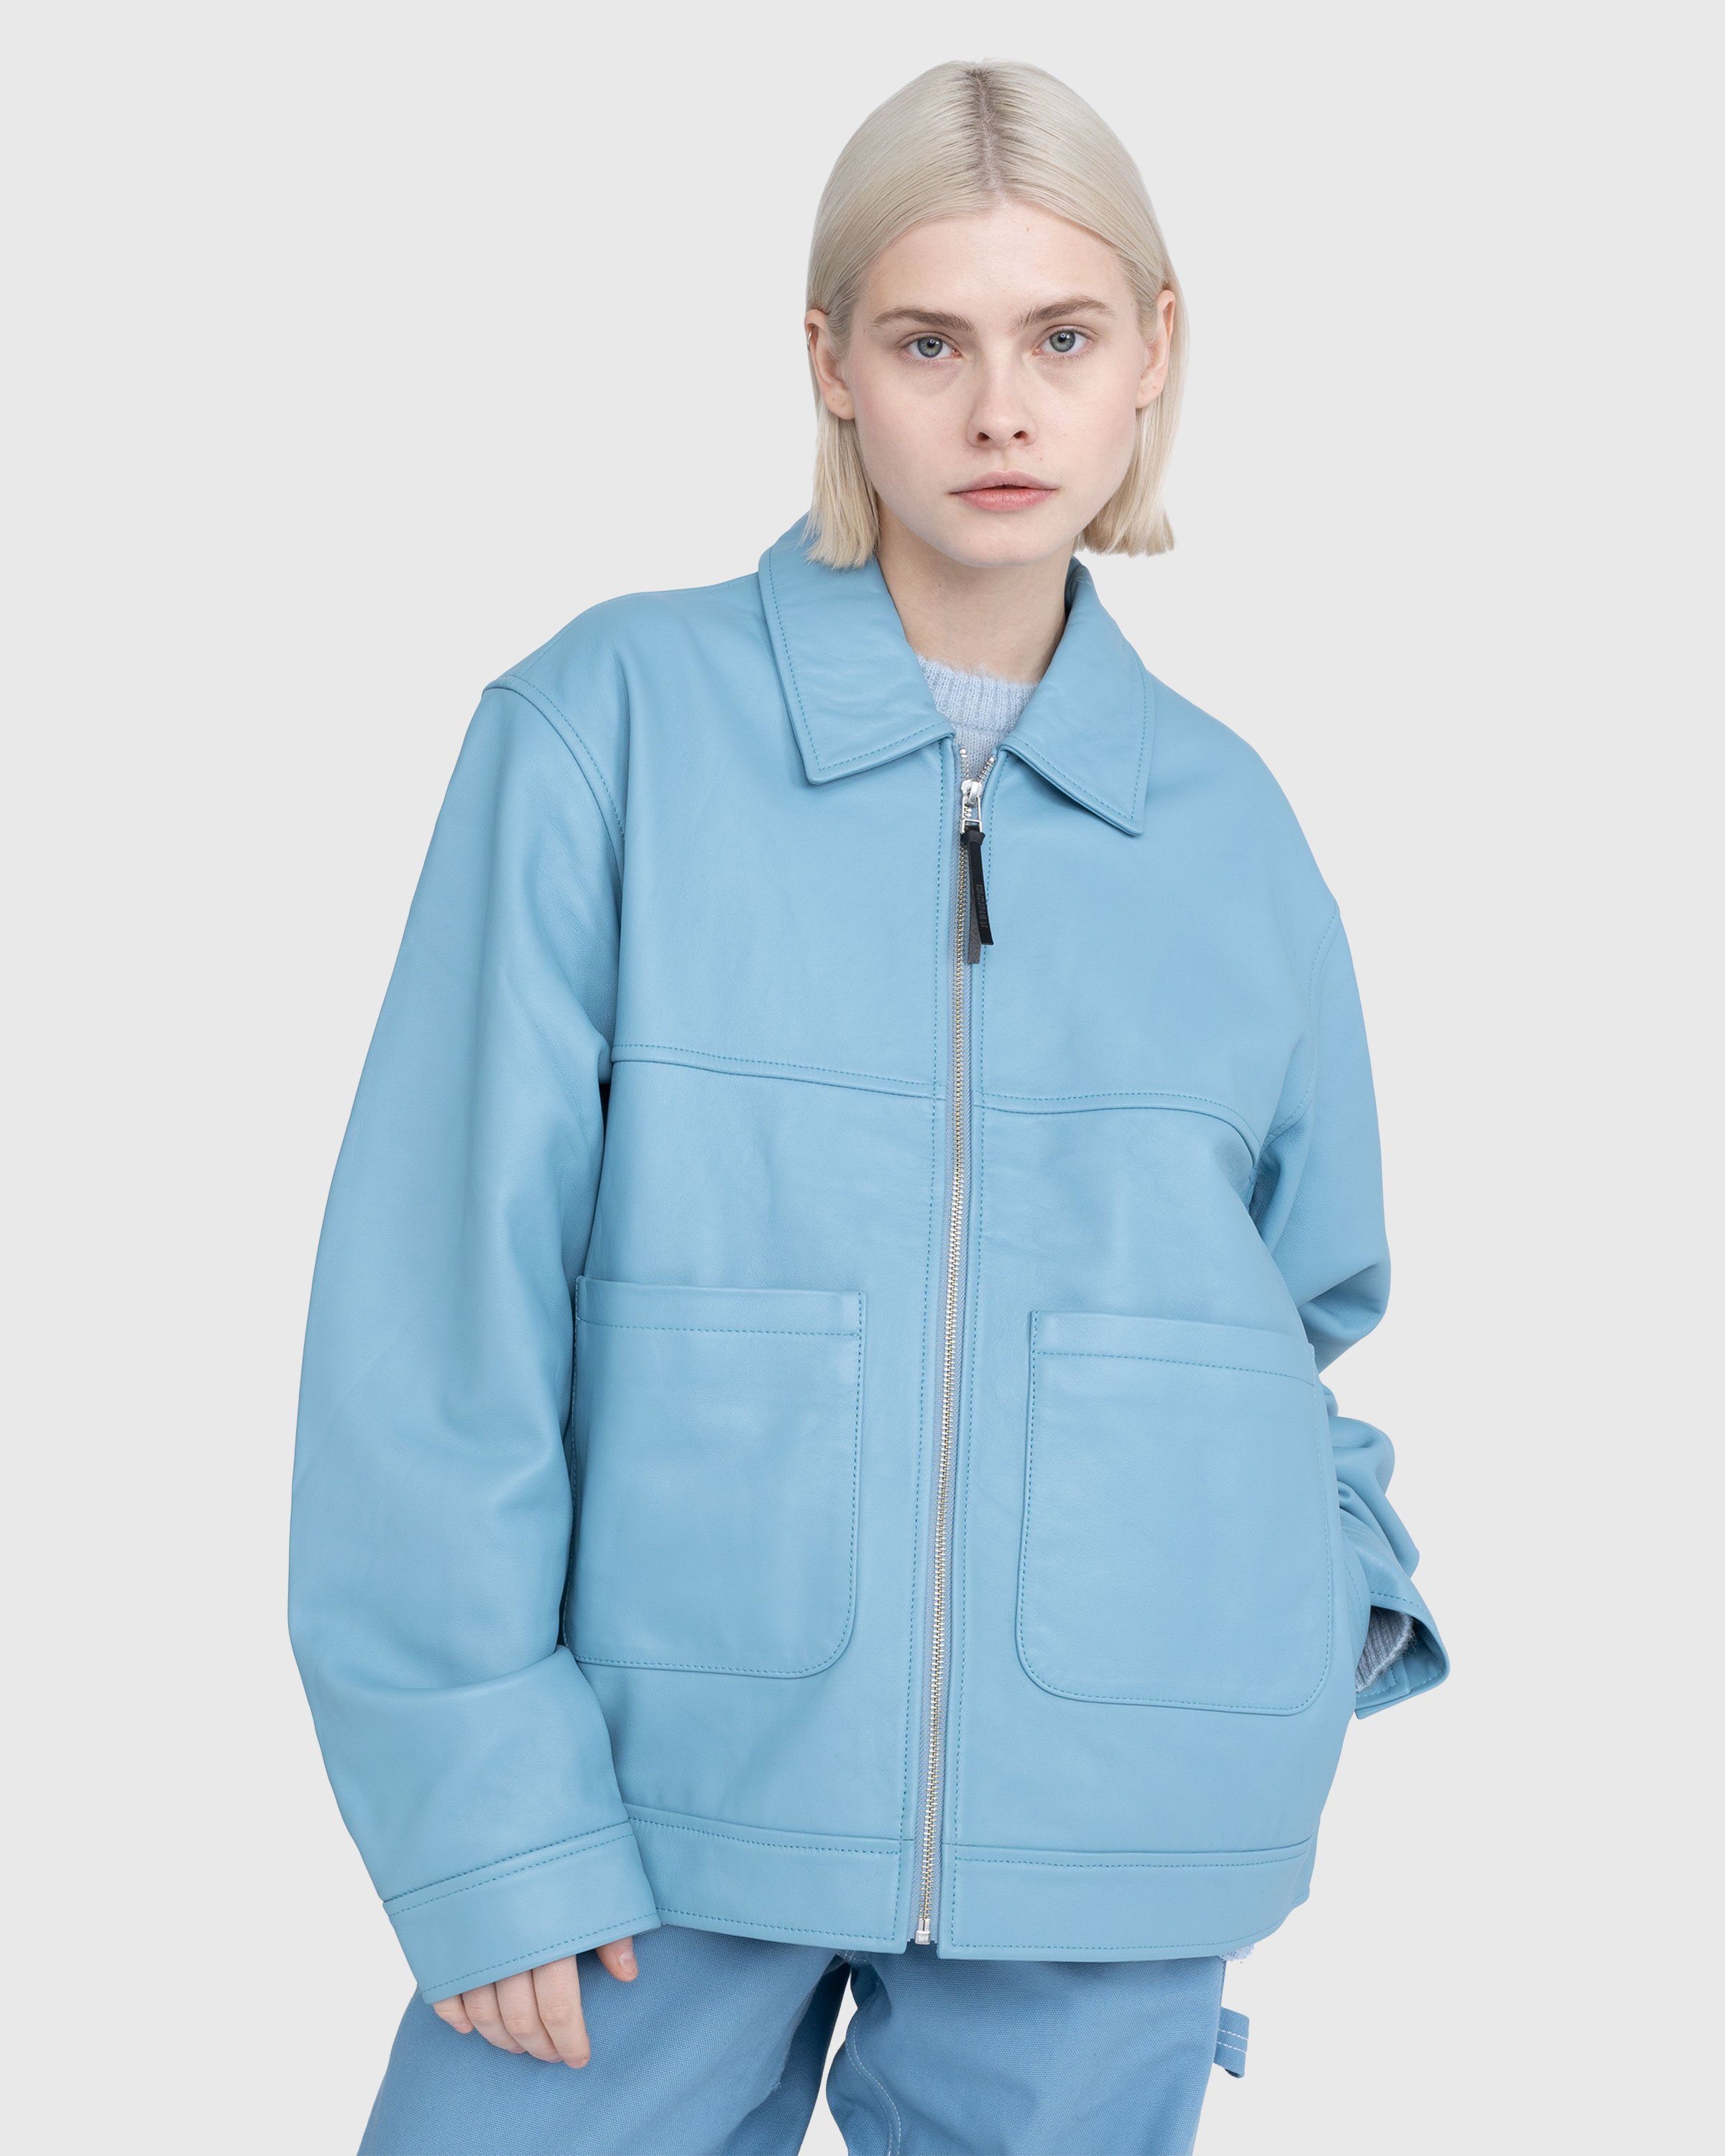 Highsnobiety - Leather Jacket Baby Blue - Clothing - Blue - Image 11